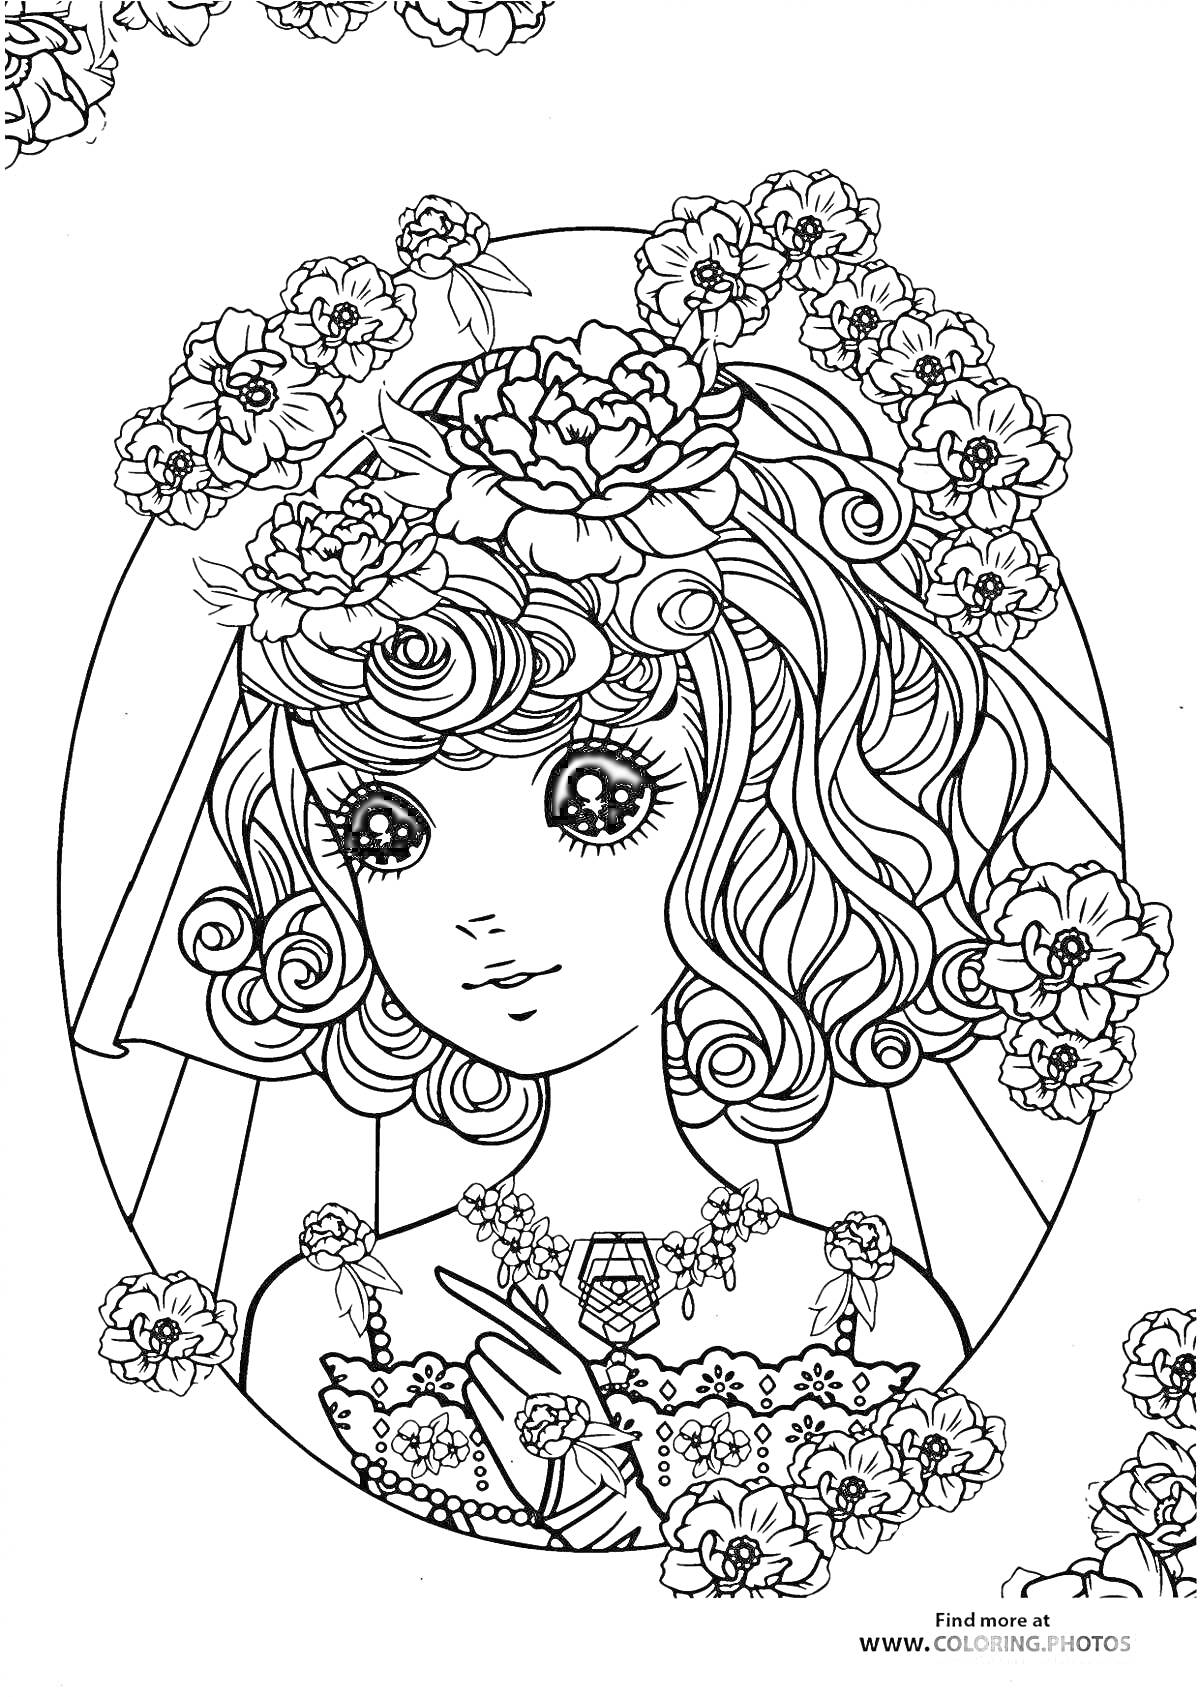 Раскраска Портрет девочки с цветами в волосах и на одежде